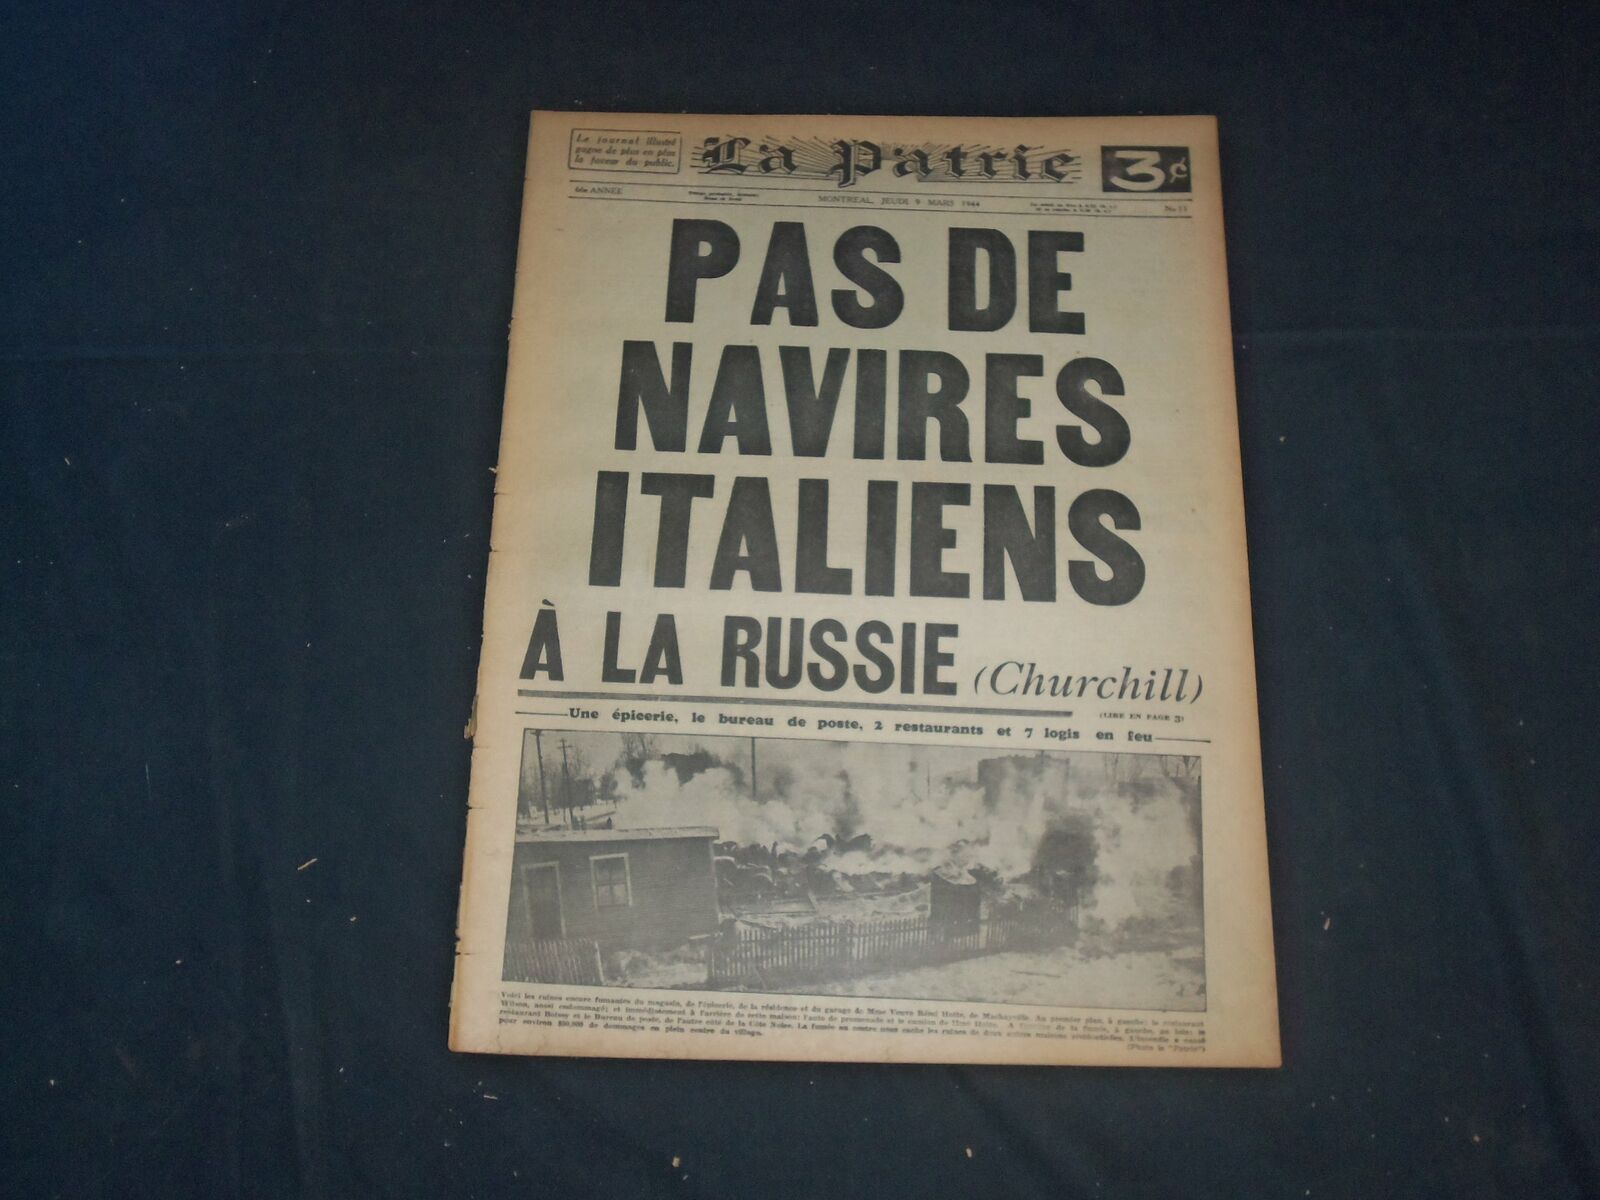 1944 MAR 9 LA PATRIE NEWSPAPER-FRENCH-PAS DE NAVIRES ITALIENS A LA RUSSIE-FR1688